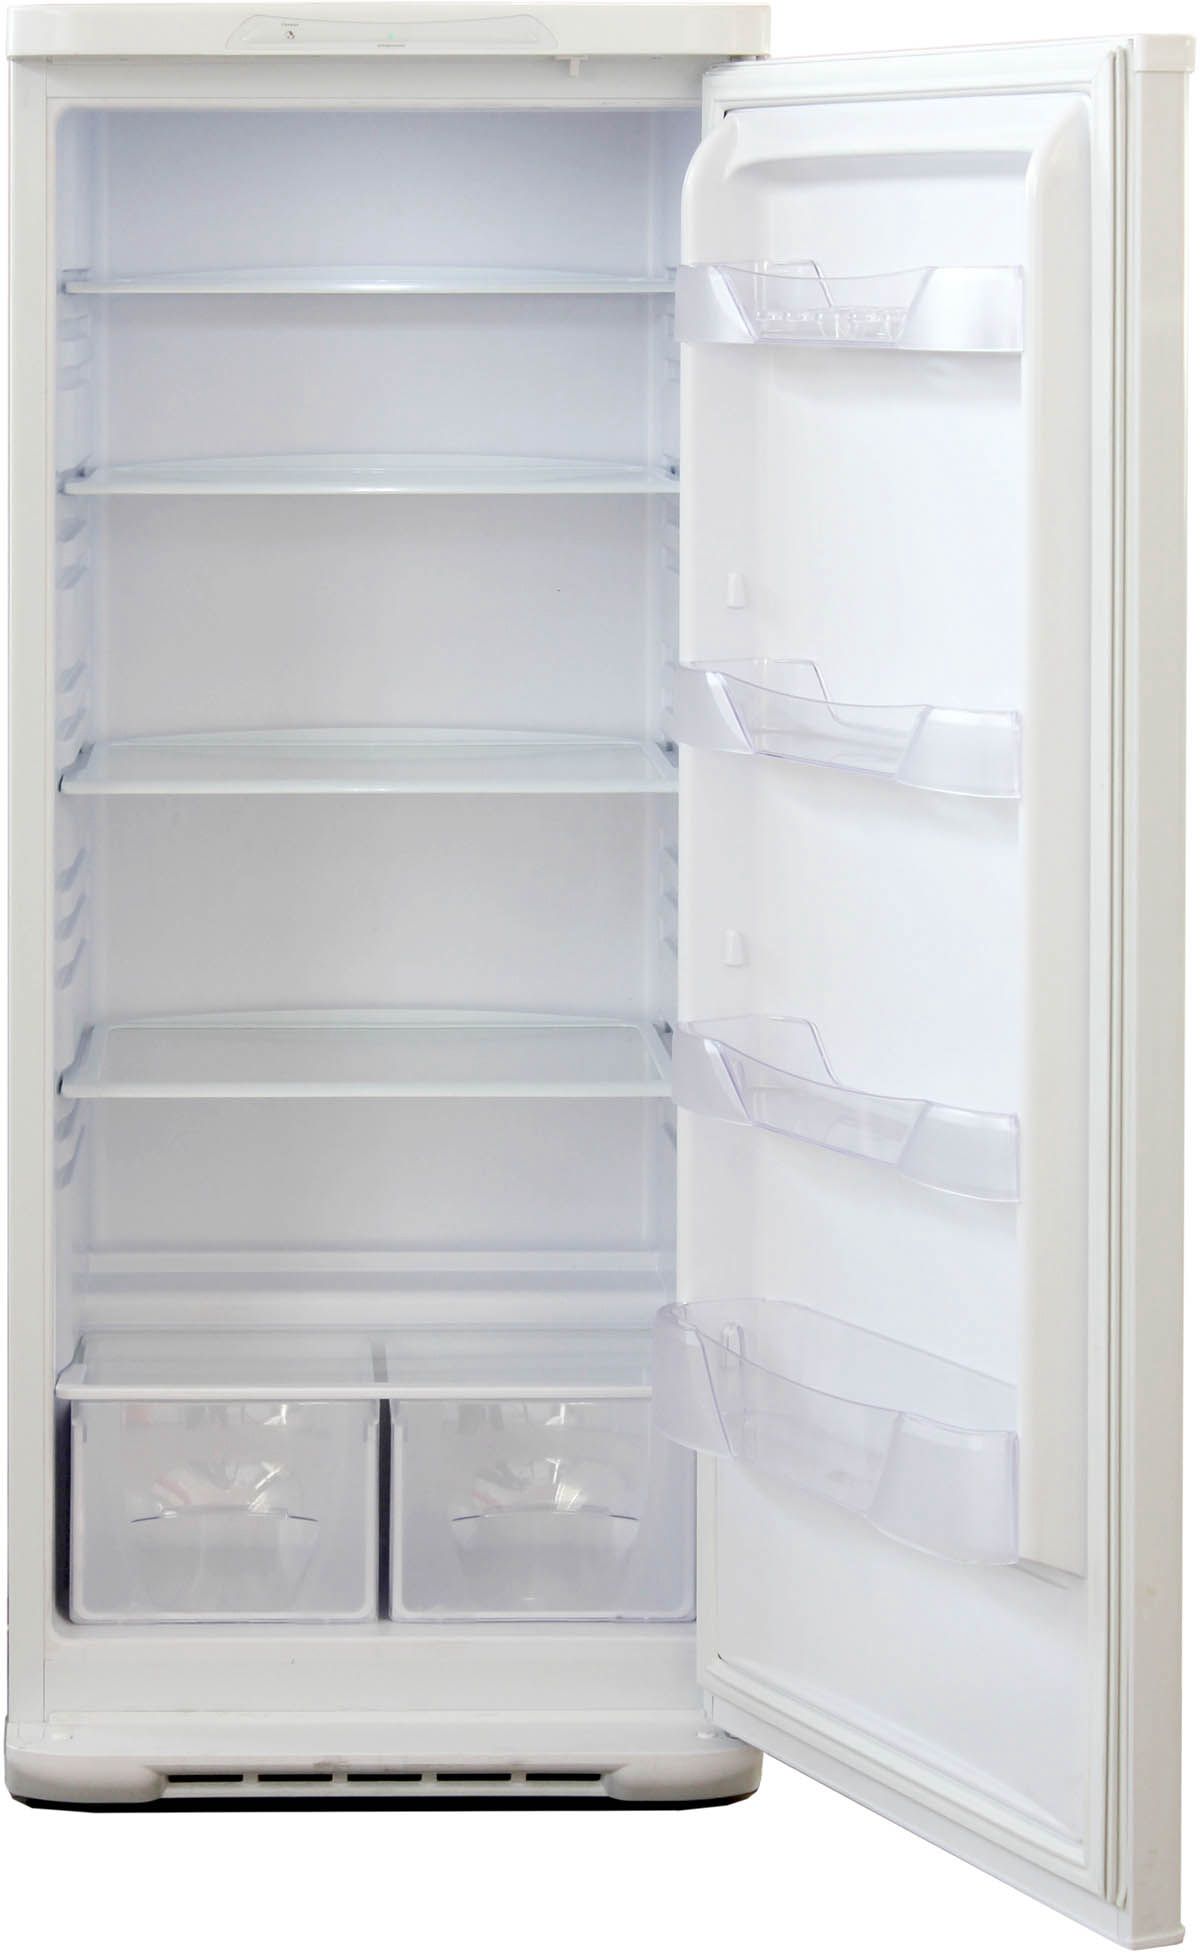 холодильник бирюса 542, купить в Красноярске холодильник бирюса 542,  купить в Красноярске дешево холодильник бирюса 542, купить в Красноярске минимальной цене холодильник бирюса 542